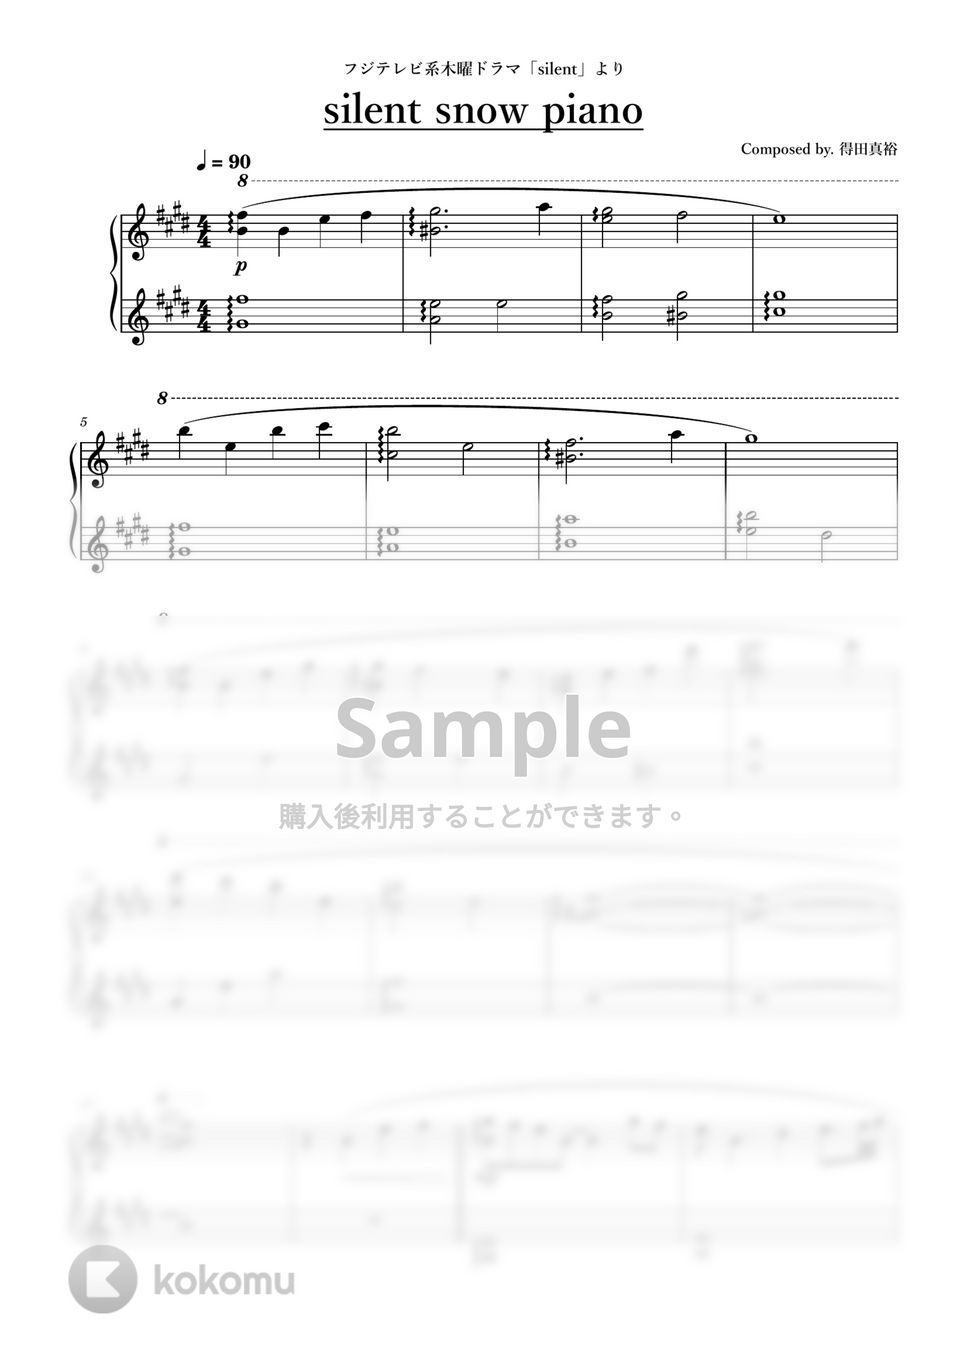 ドラマ「silent」より - silent snow piano by ちゃんRINA。